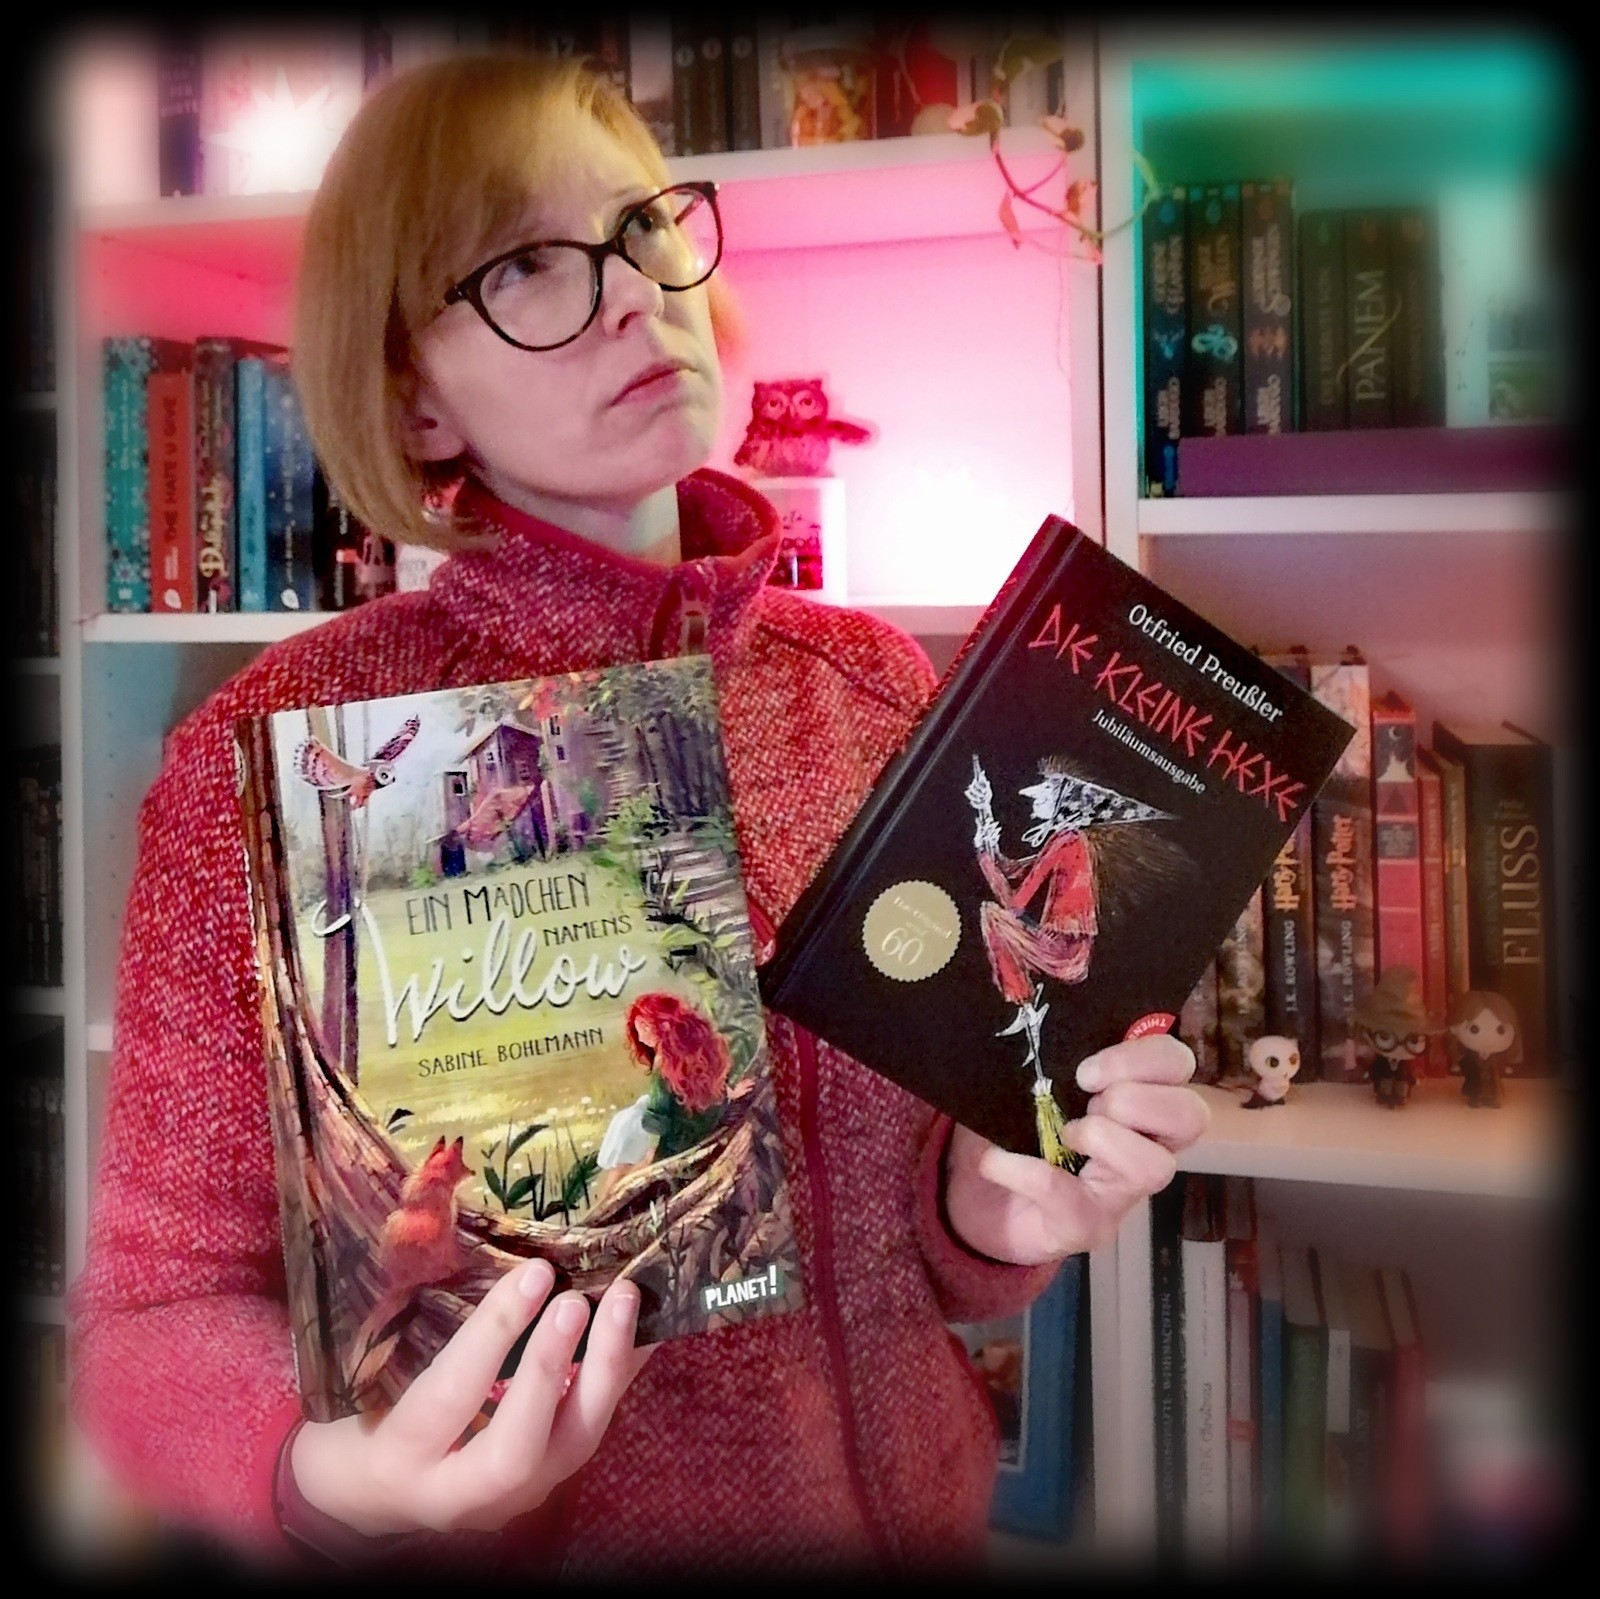 Hexen in Kinderbüchern – Modern vs. Traditionell: „Ein Mädchen namens Willow“ von Sabine Bohlmann + „Die kleine Hexe“ von Otfried Preußler